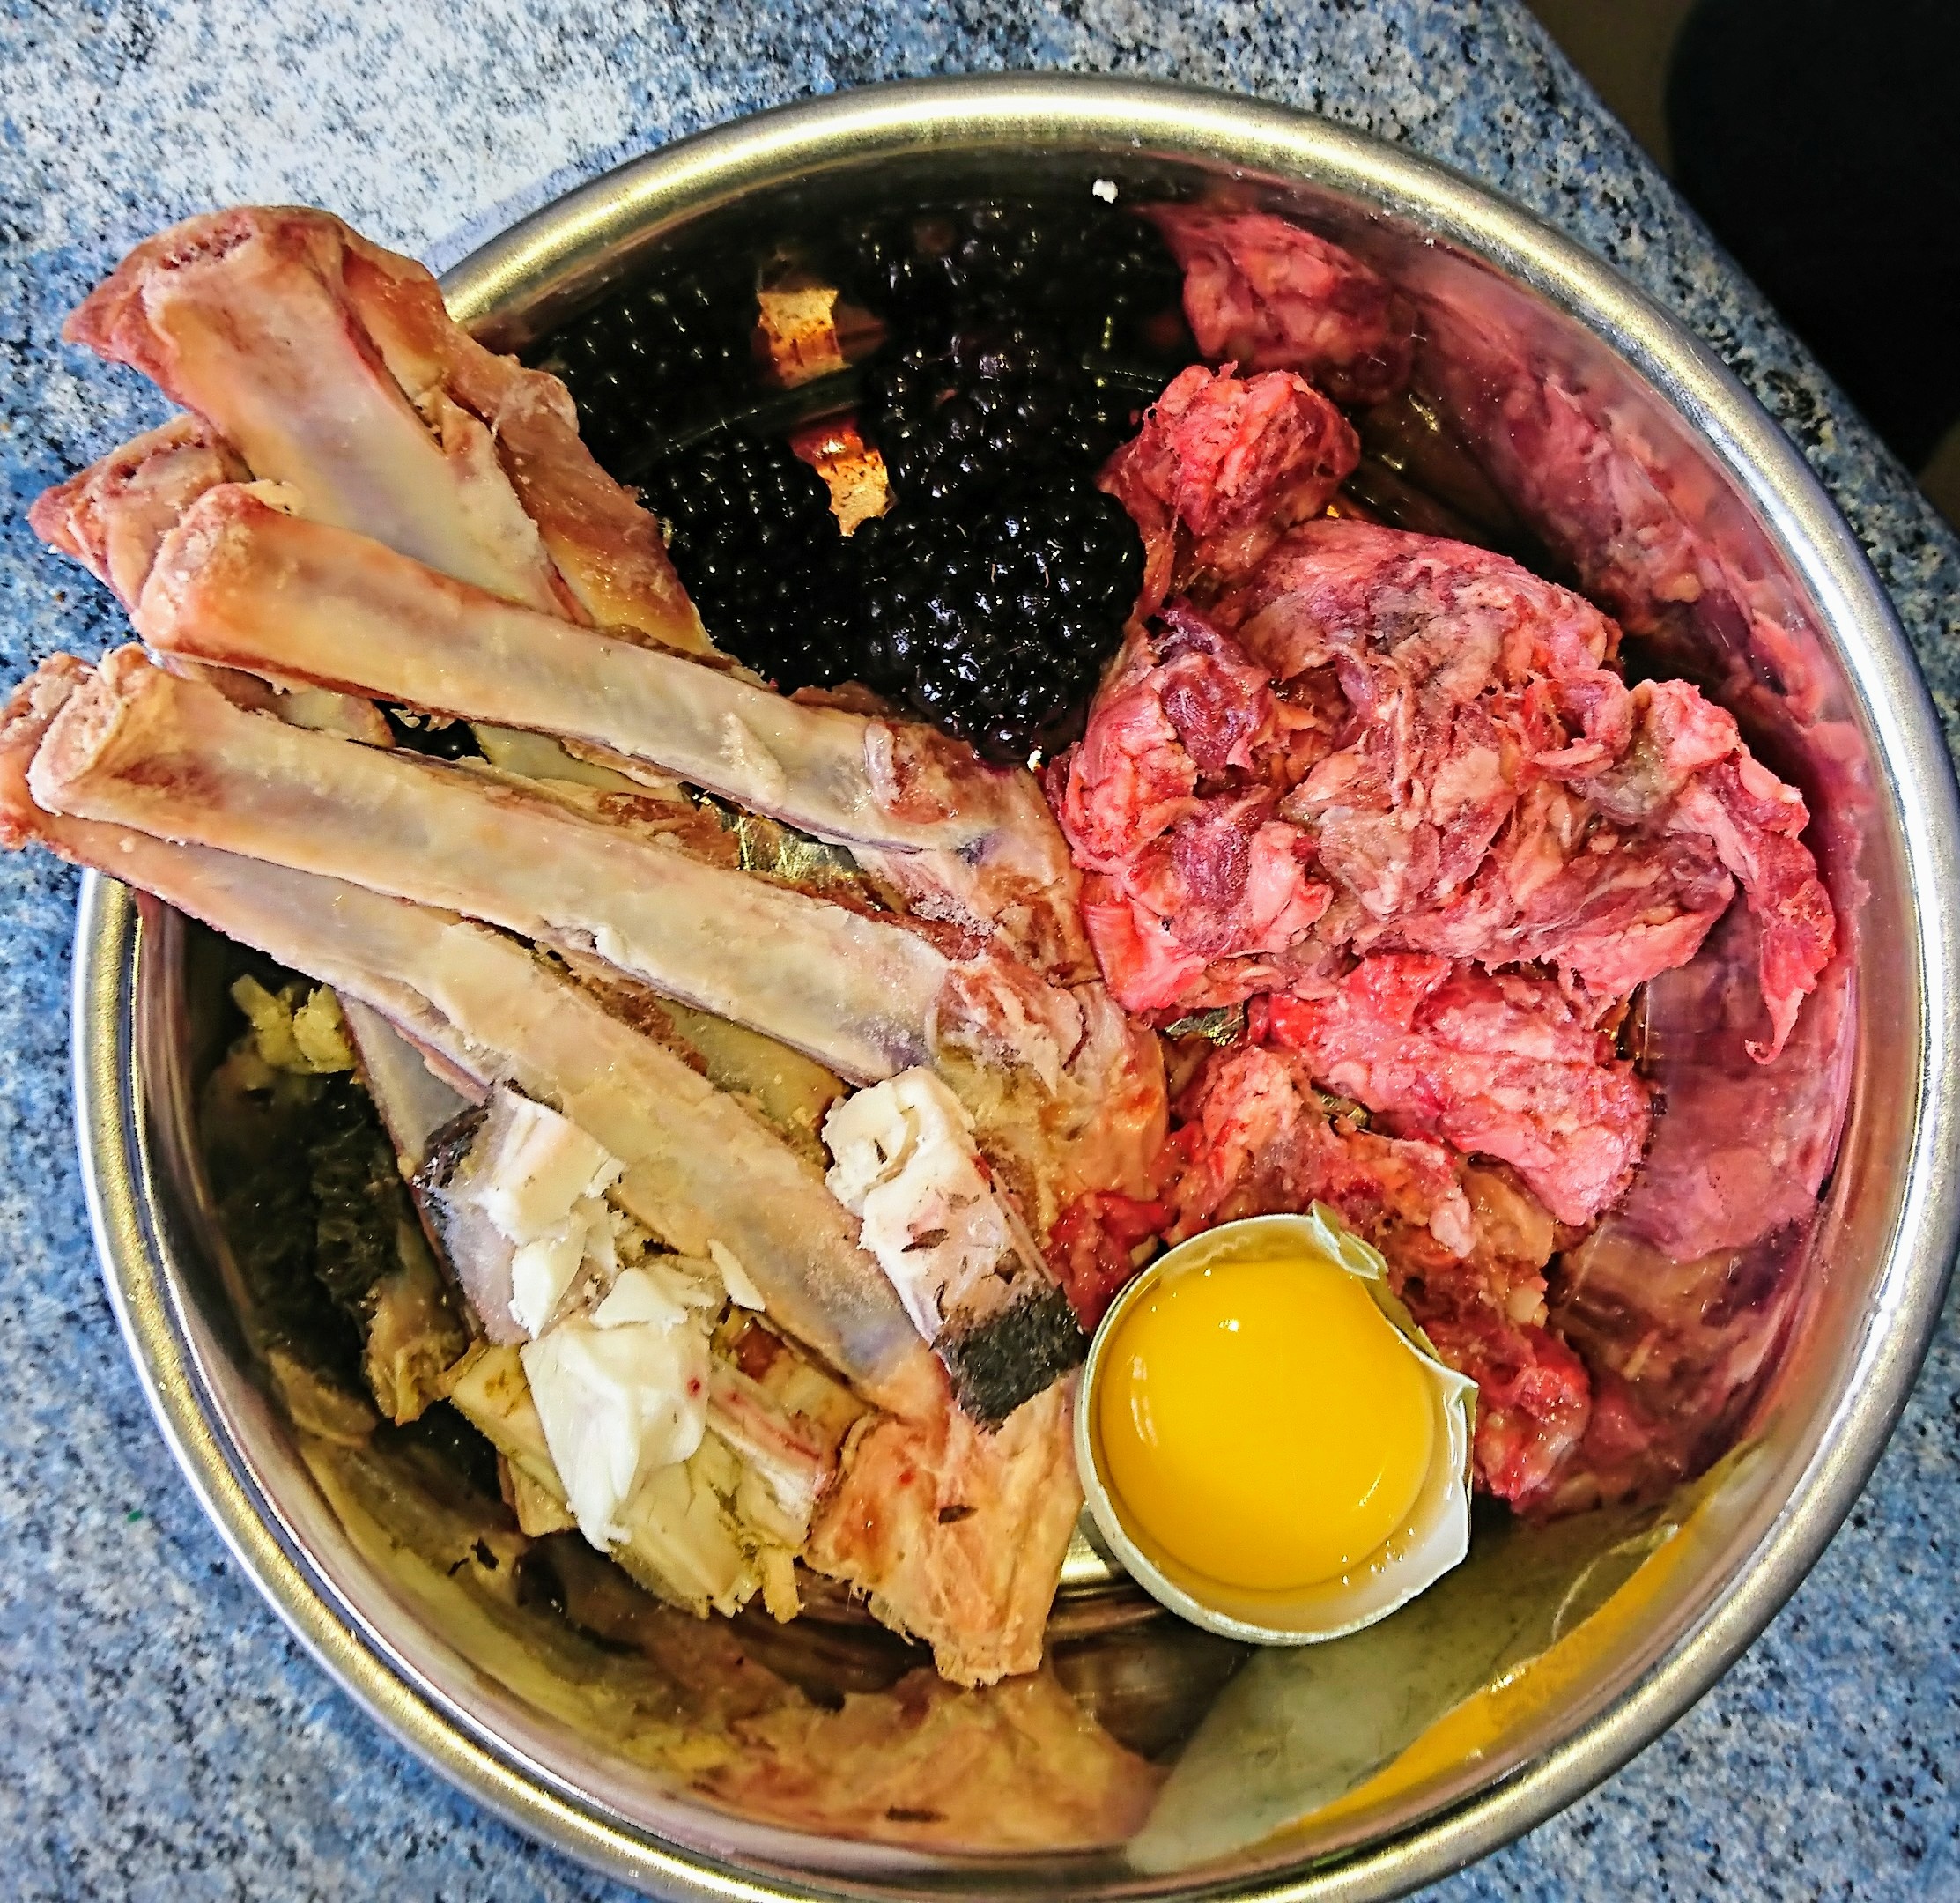 lamb-ribs-black-berries-egg-lamb-mince-beef-tripe-chunks.